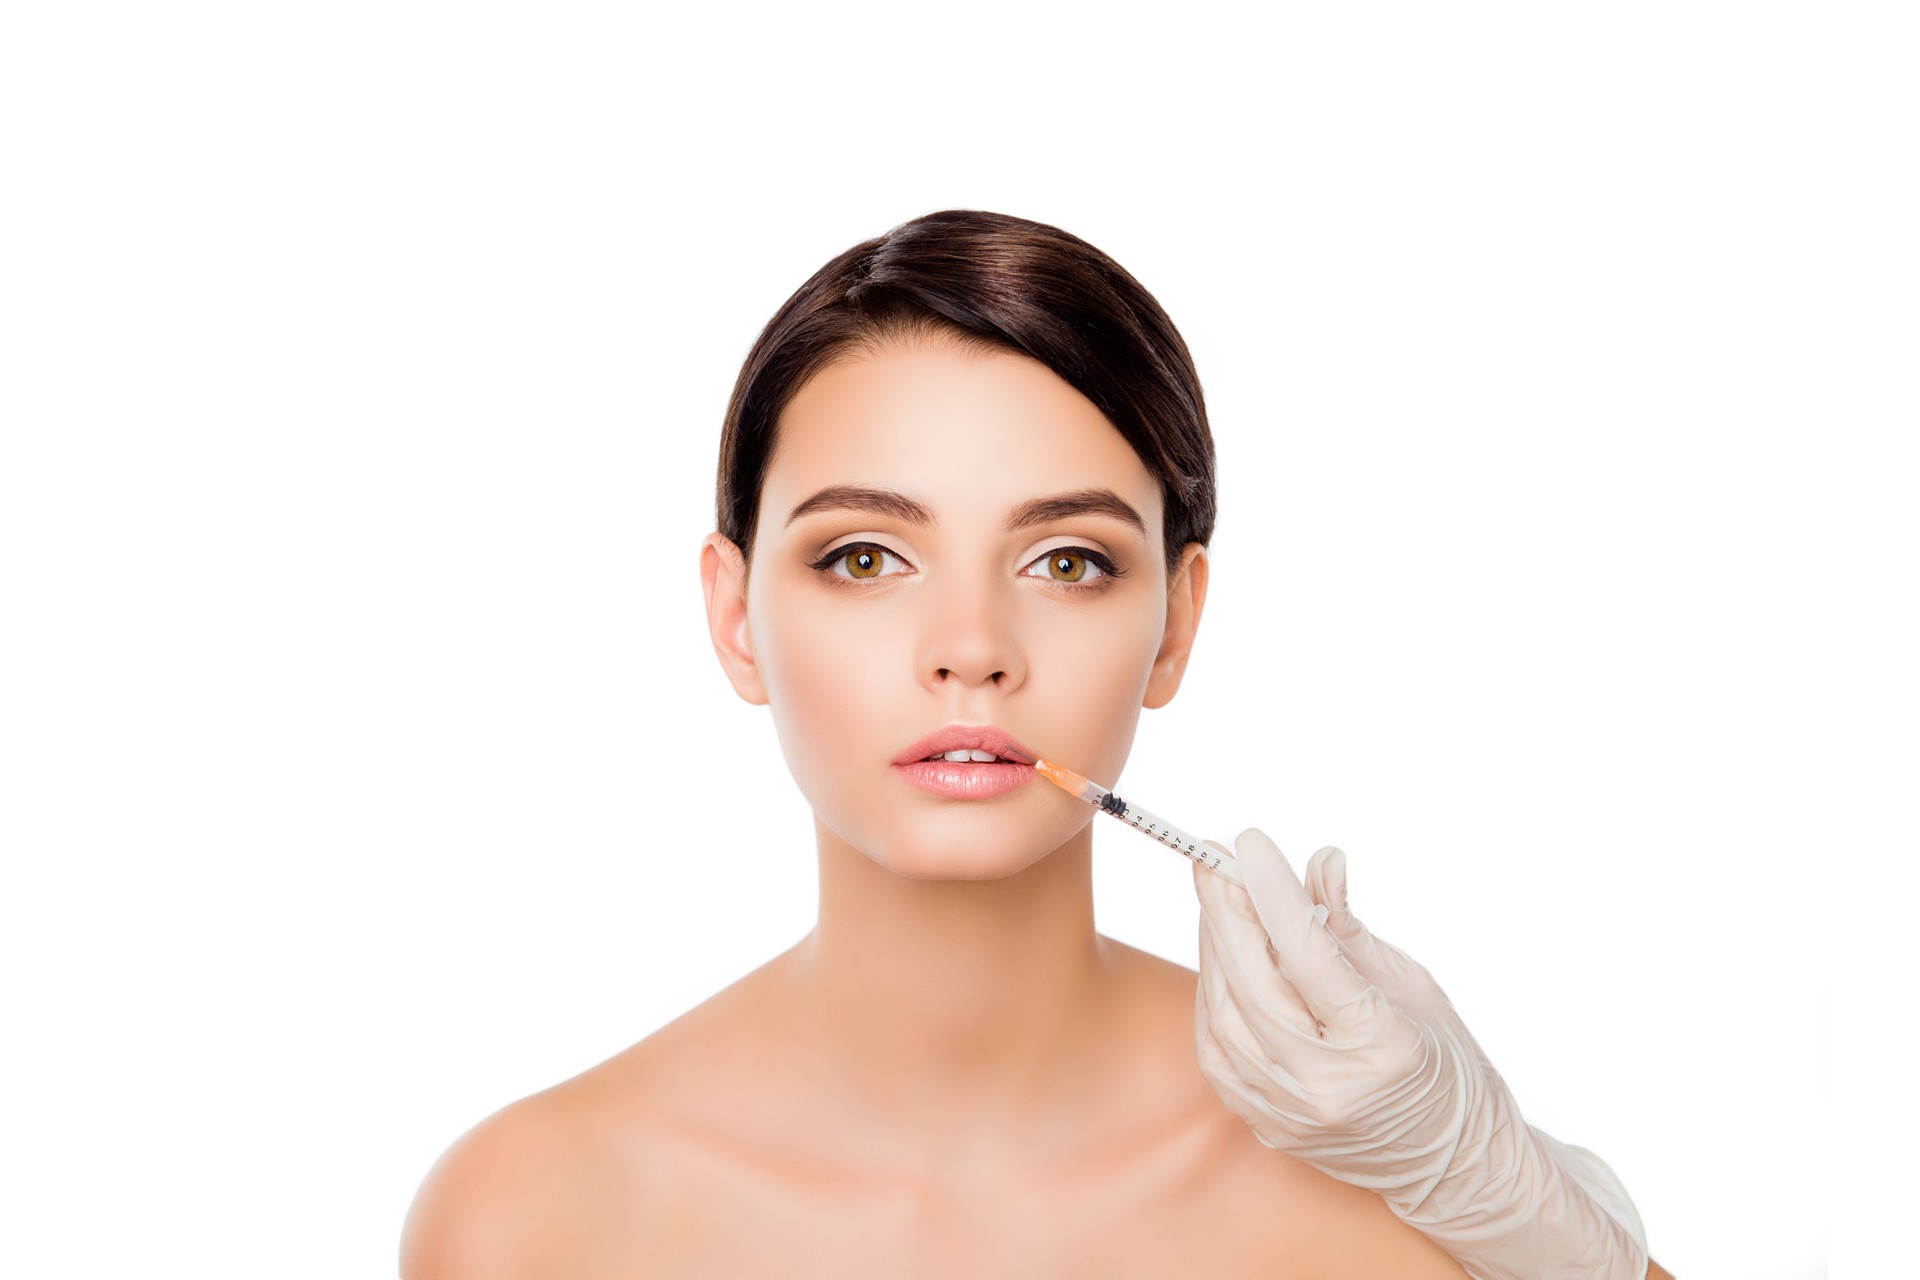 Wstrzykiwanie Botoxu w usta młodej kobiety